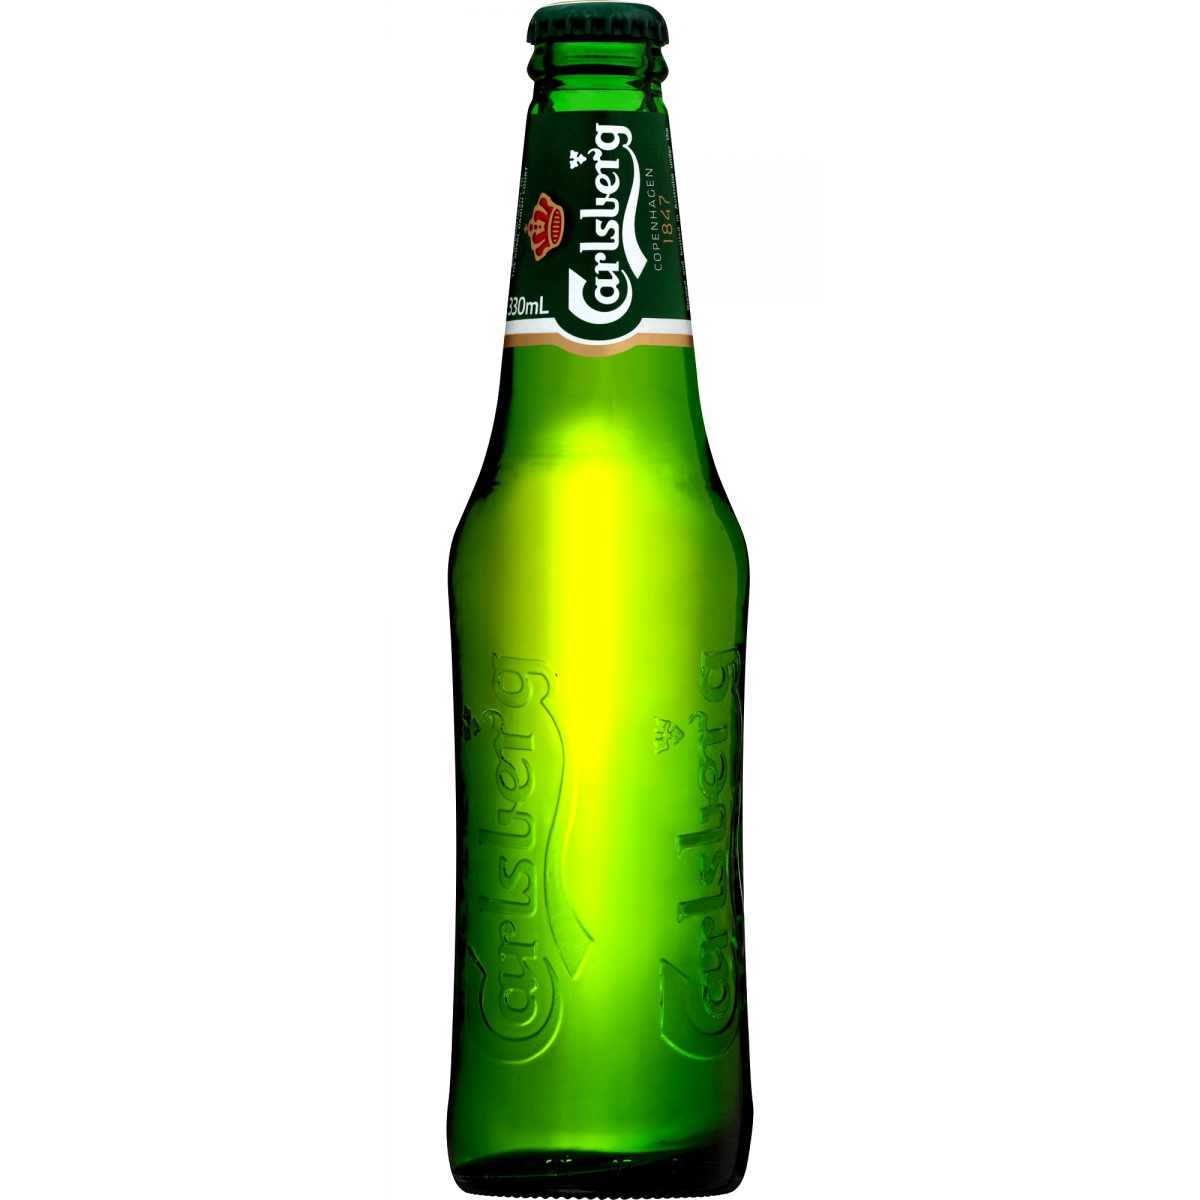 carlsberg-beer